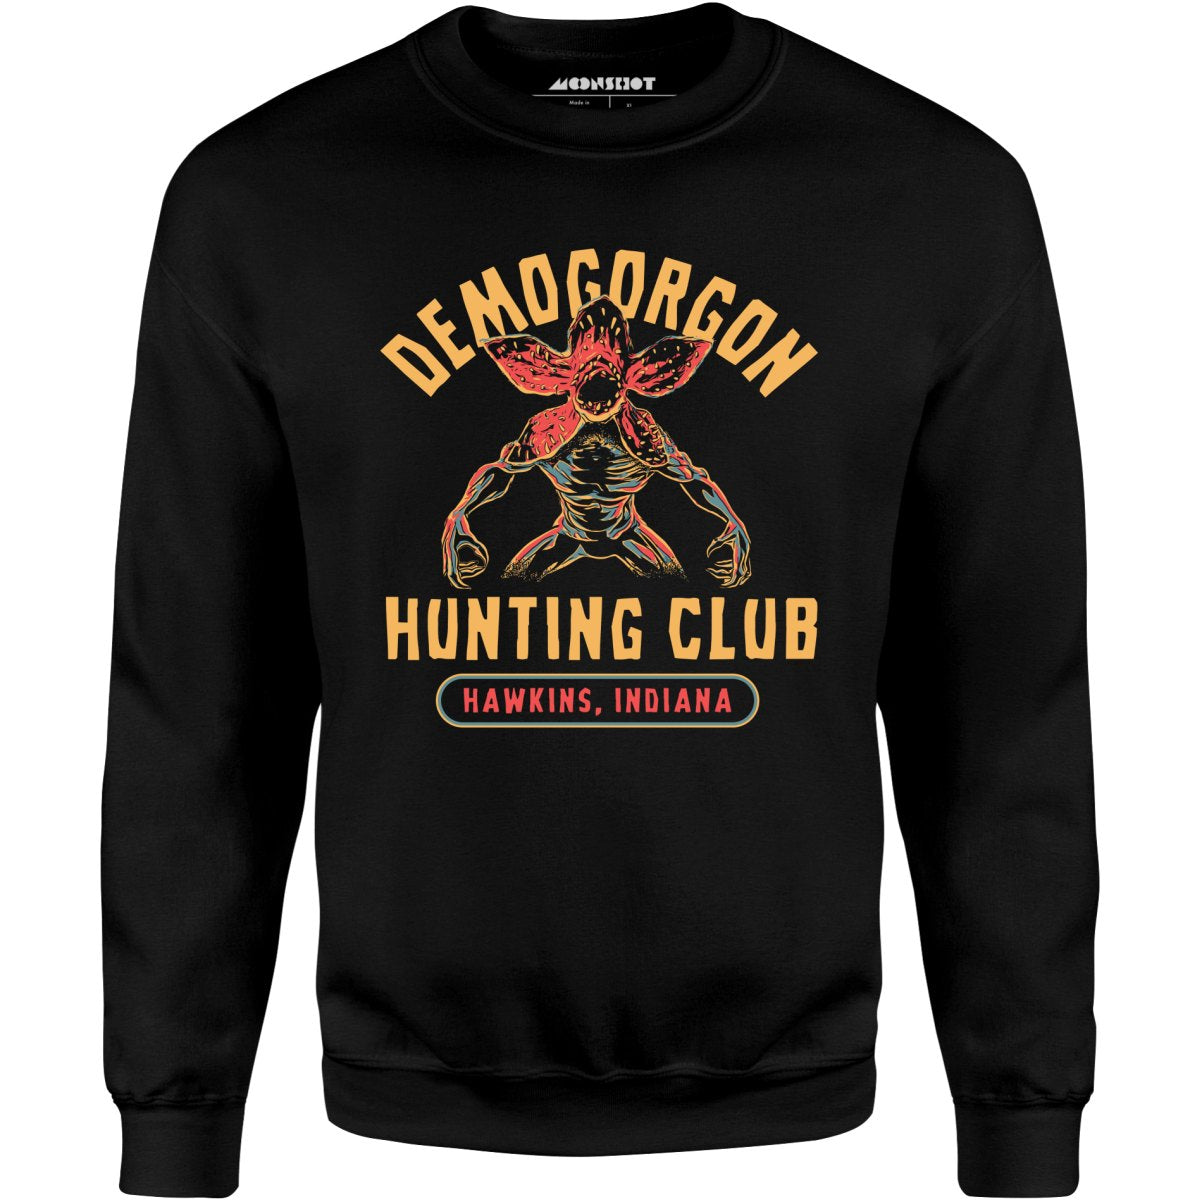 Demogorgon Hunting Club - Unisex Sweatshirt